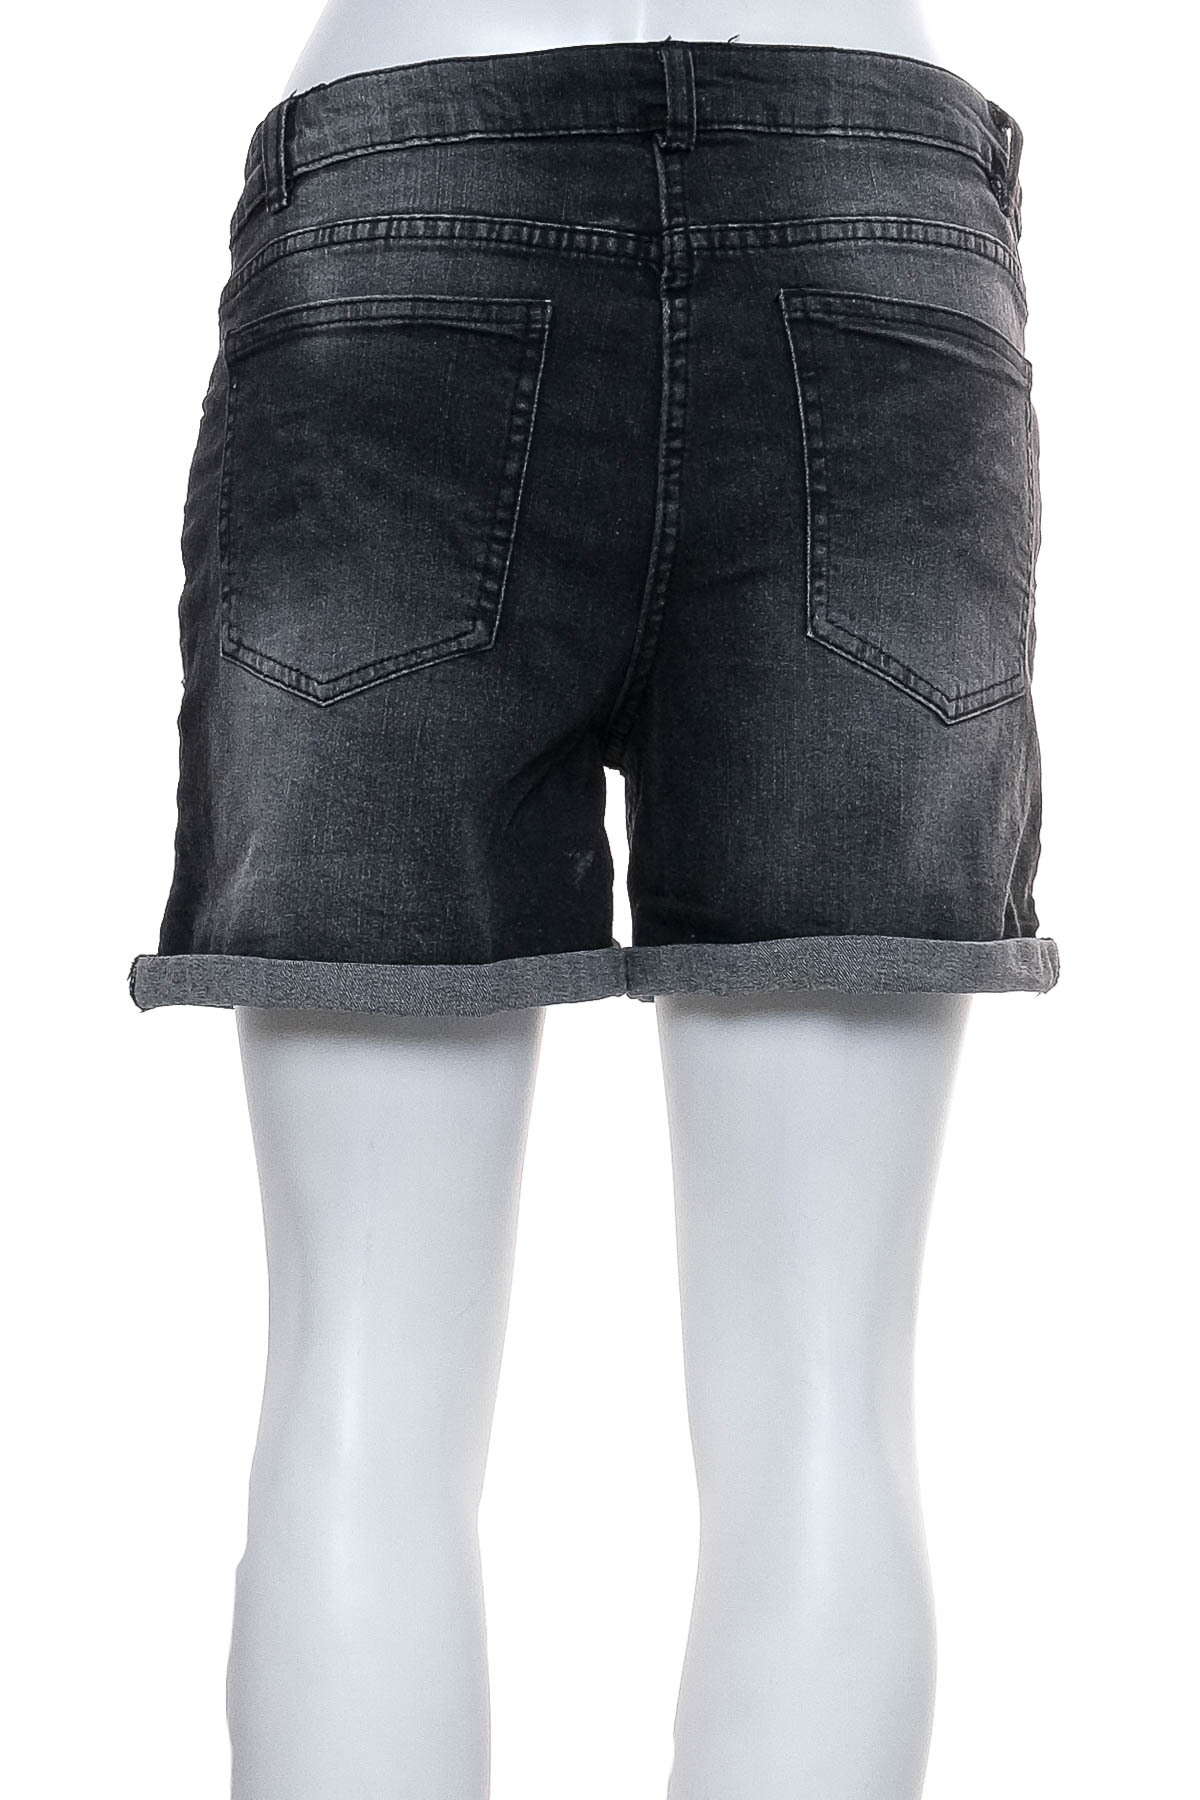 Female shorts - UP2FASHION - 1